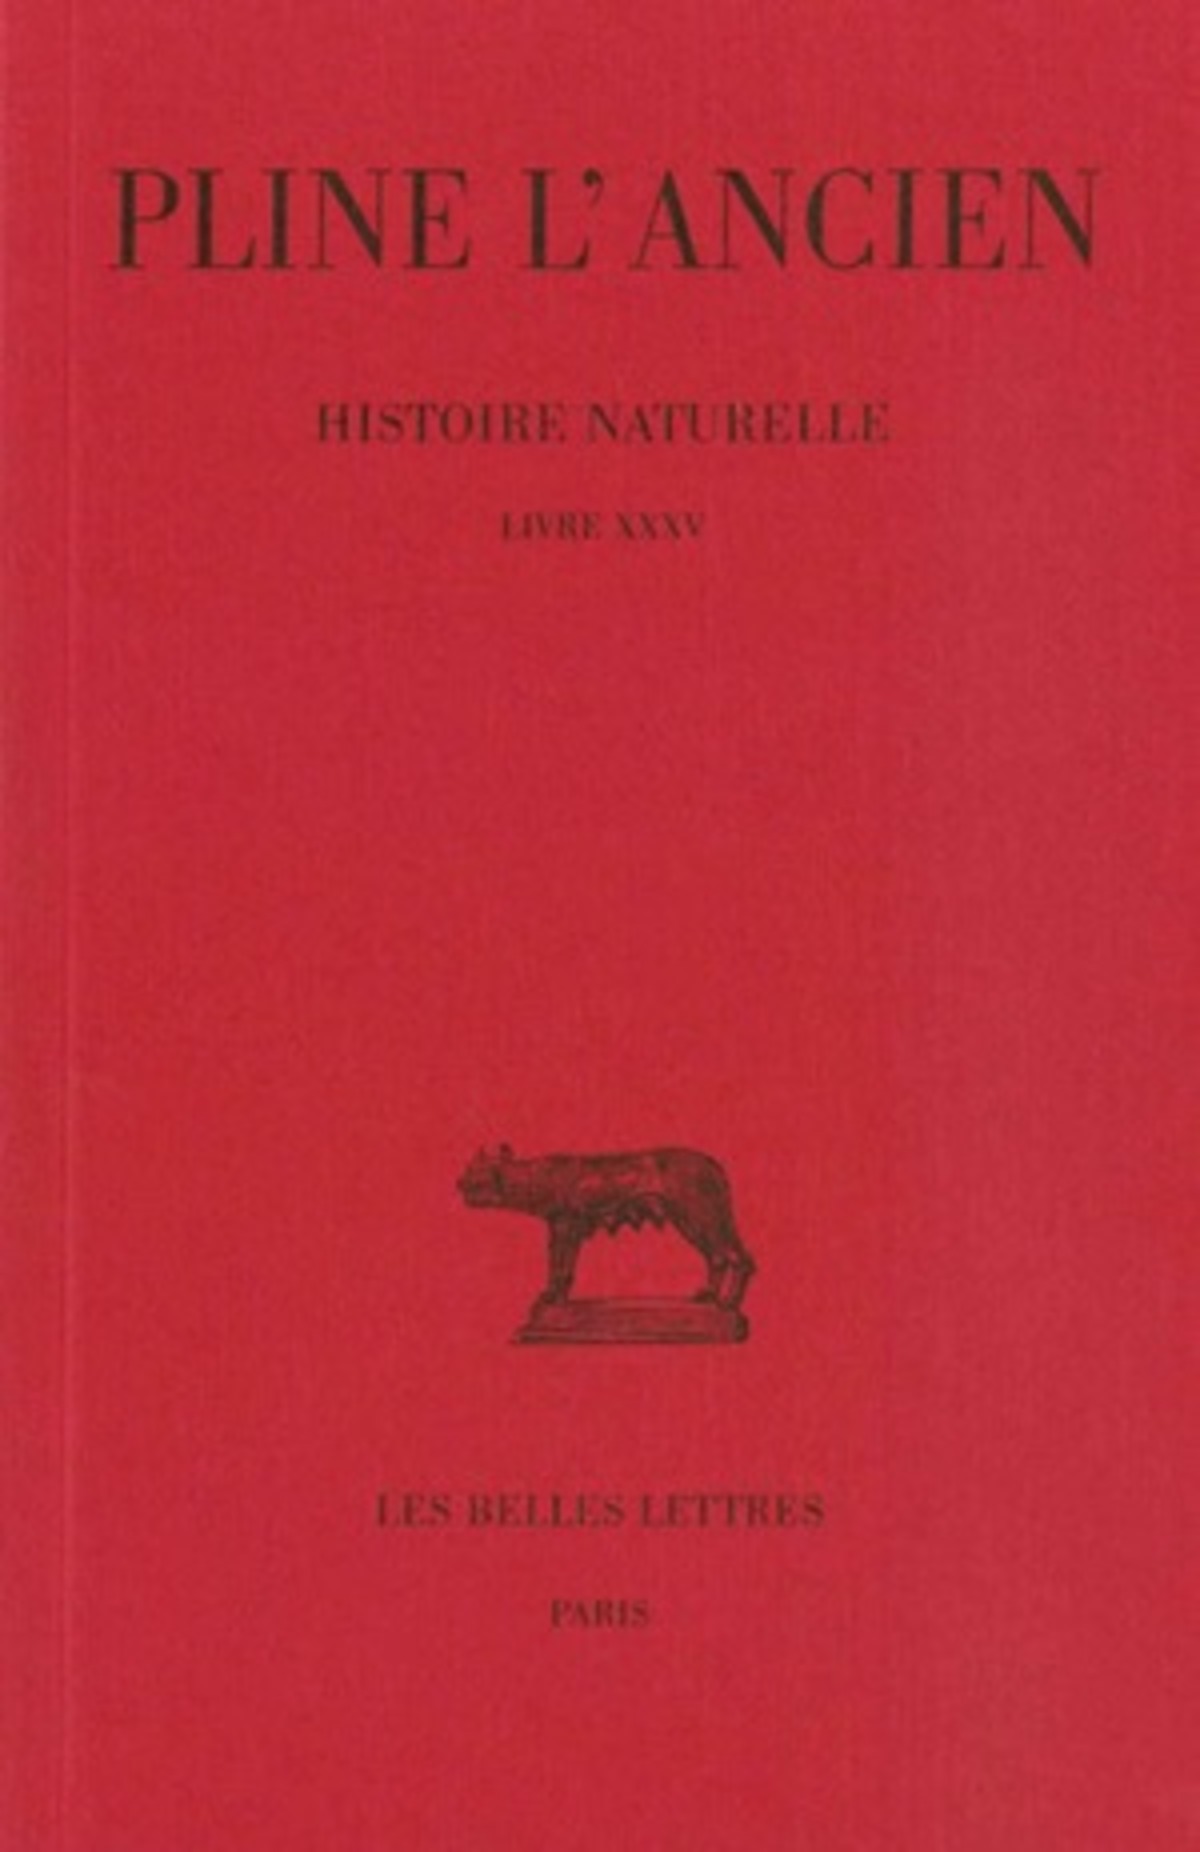 Histoire naturelle. Livre XXXV